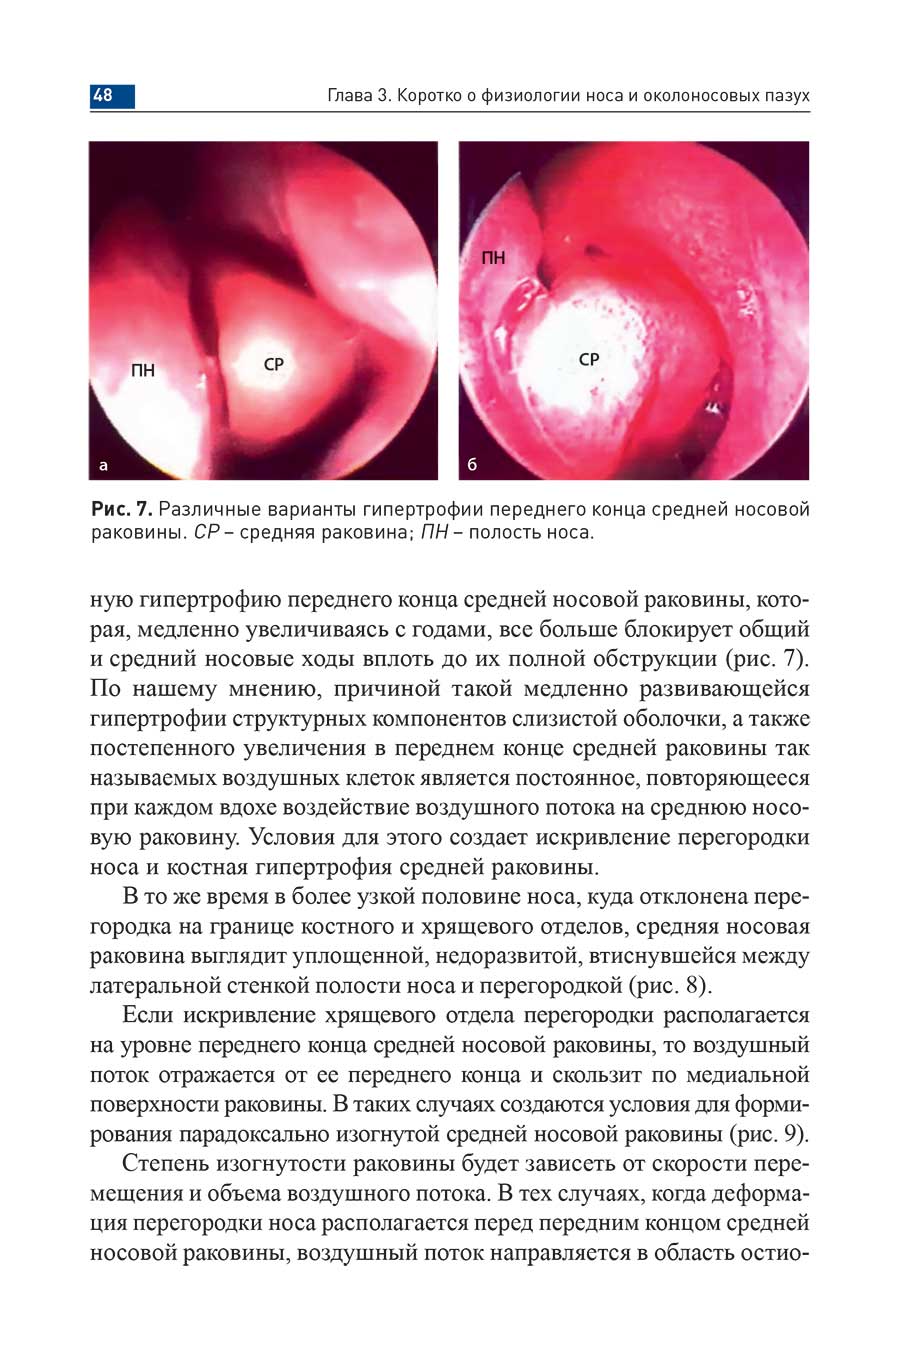 Рис. 7. Различные варианты гипертрофии переднего конца средней носовой раковины. СР-средняя раковина,- ПН - полость носа.